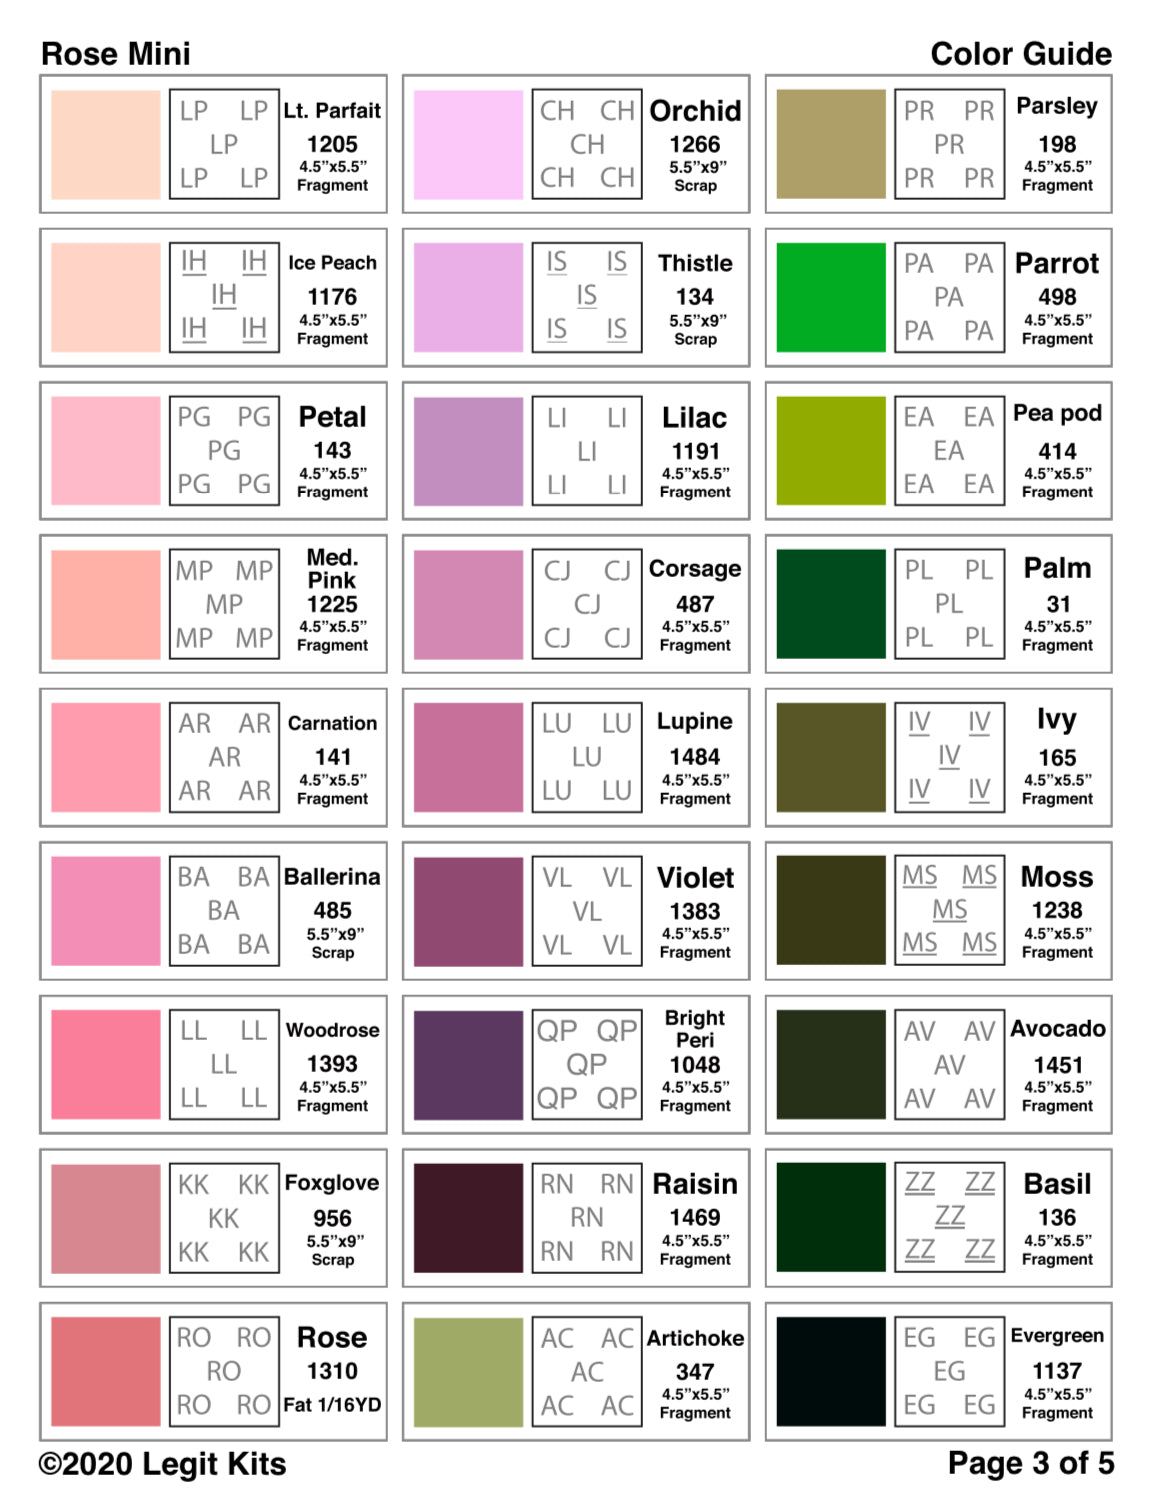 Rose Mini Quilt Kit